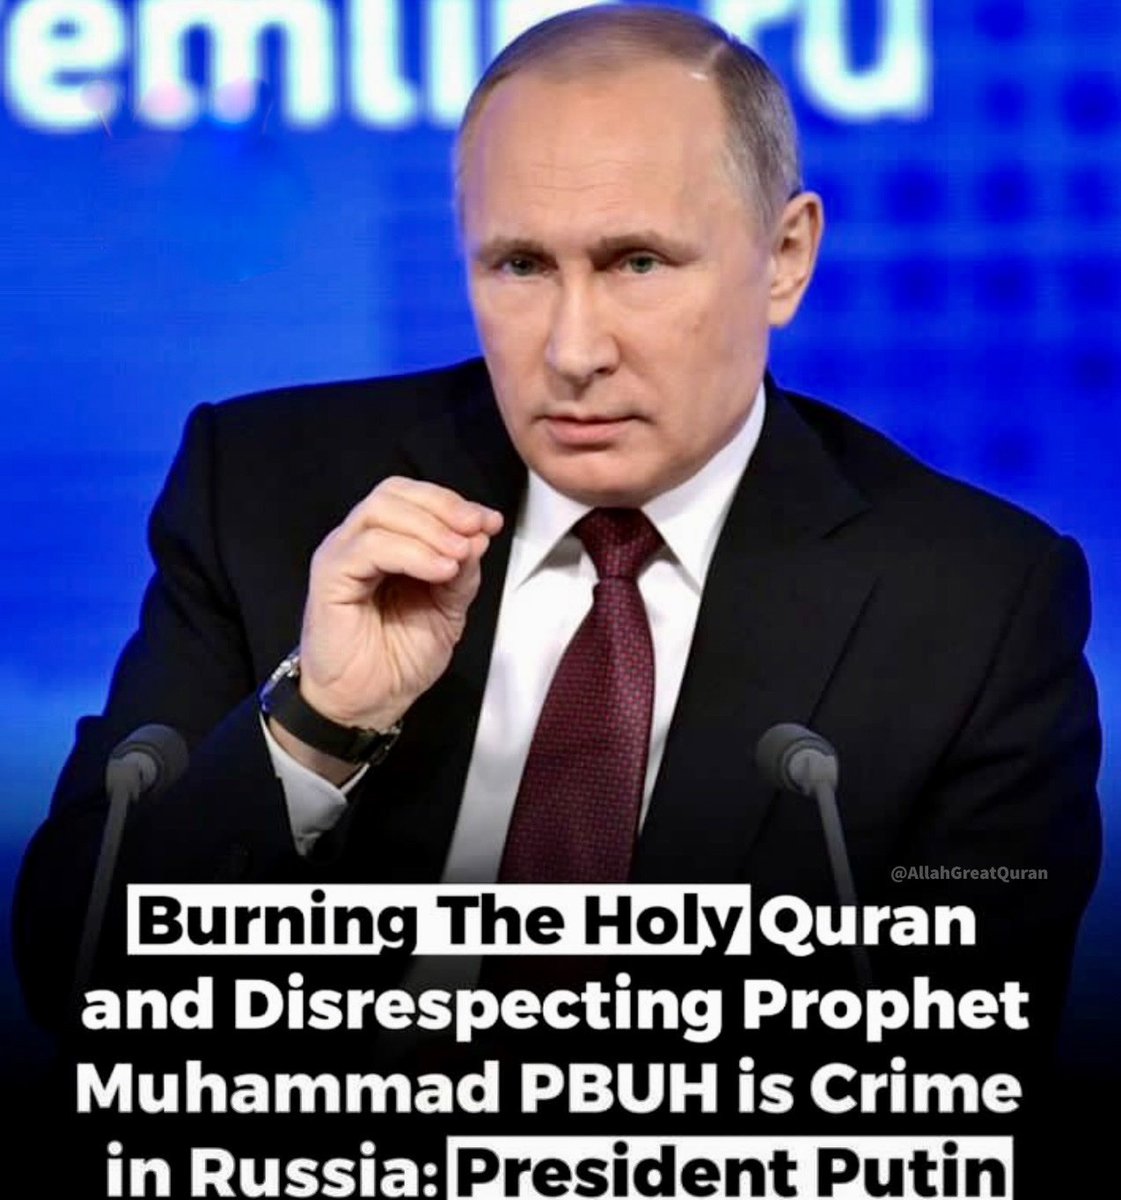 पवित्र कुरान को जलाना और पैगंबर मुहम्मद साहब का अनादर करना रूस में अपराध है: राष्ट्रपति पुतिन